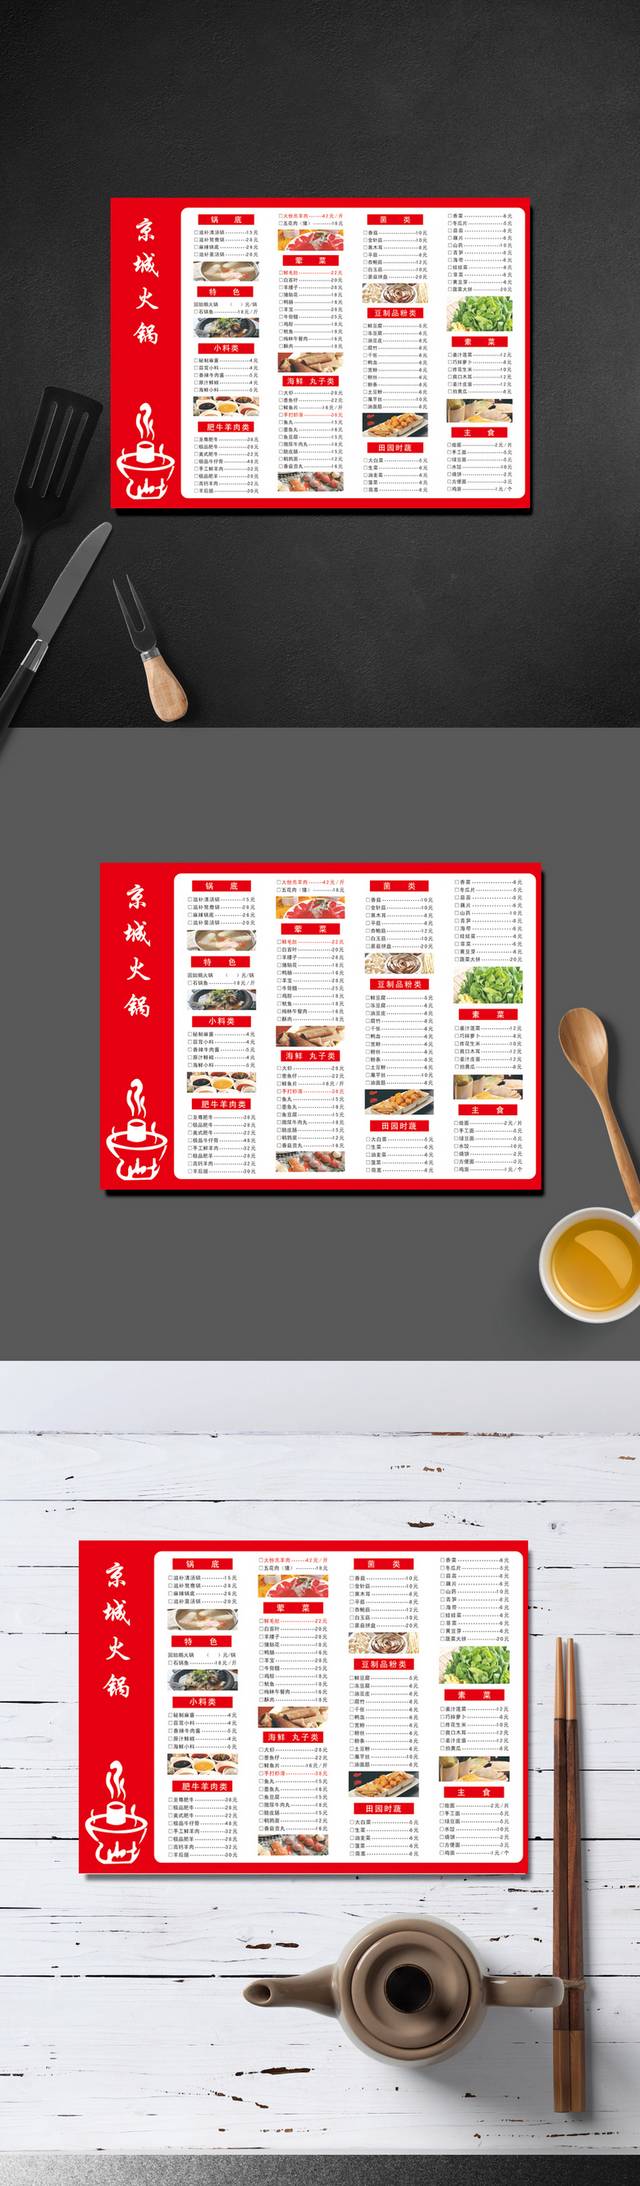 火锅店实用菜单设计